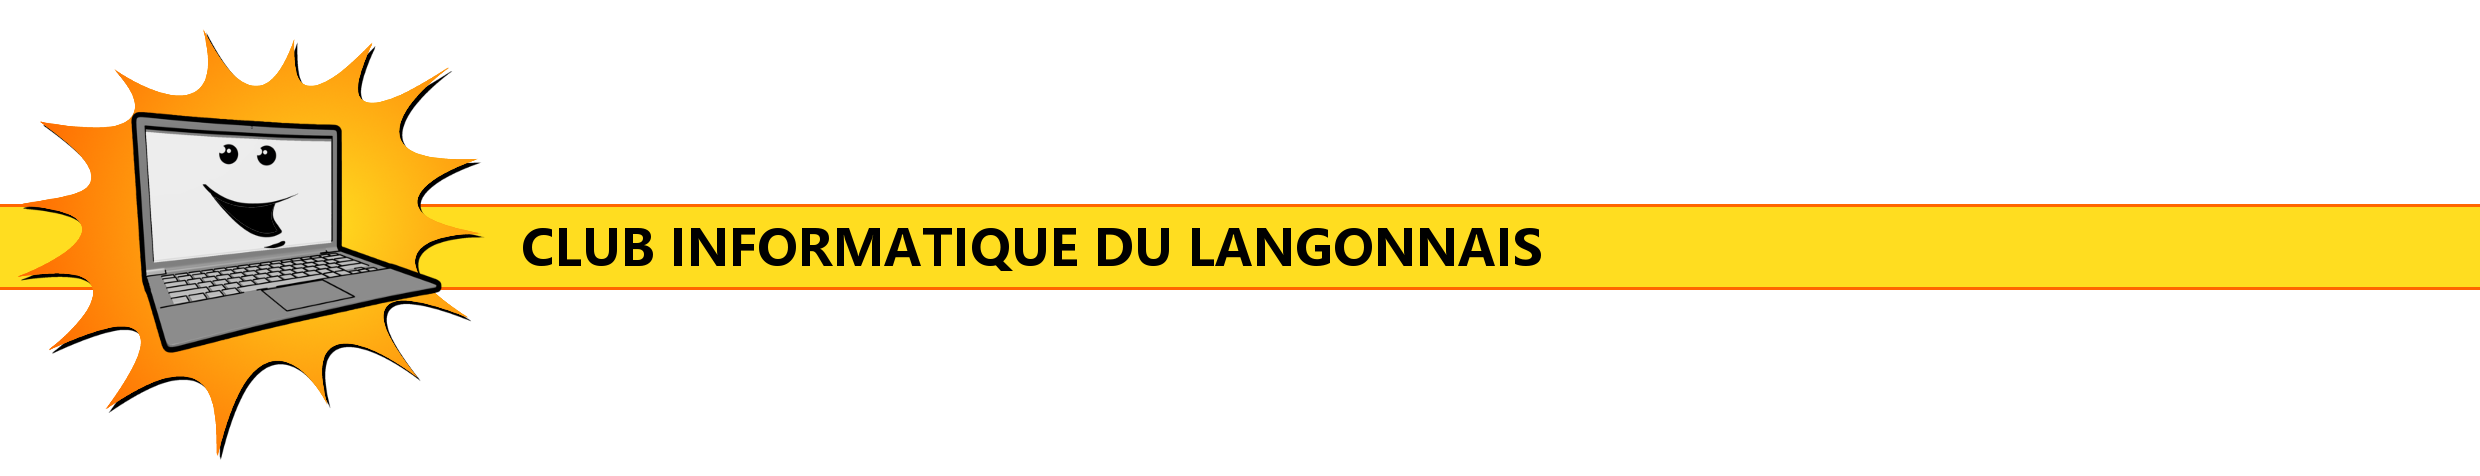 Club Informatique du Langonnais - CIL